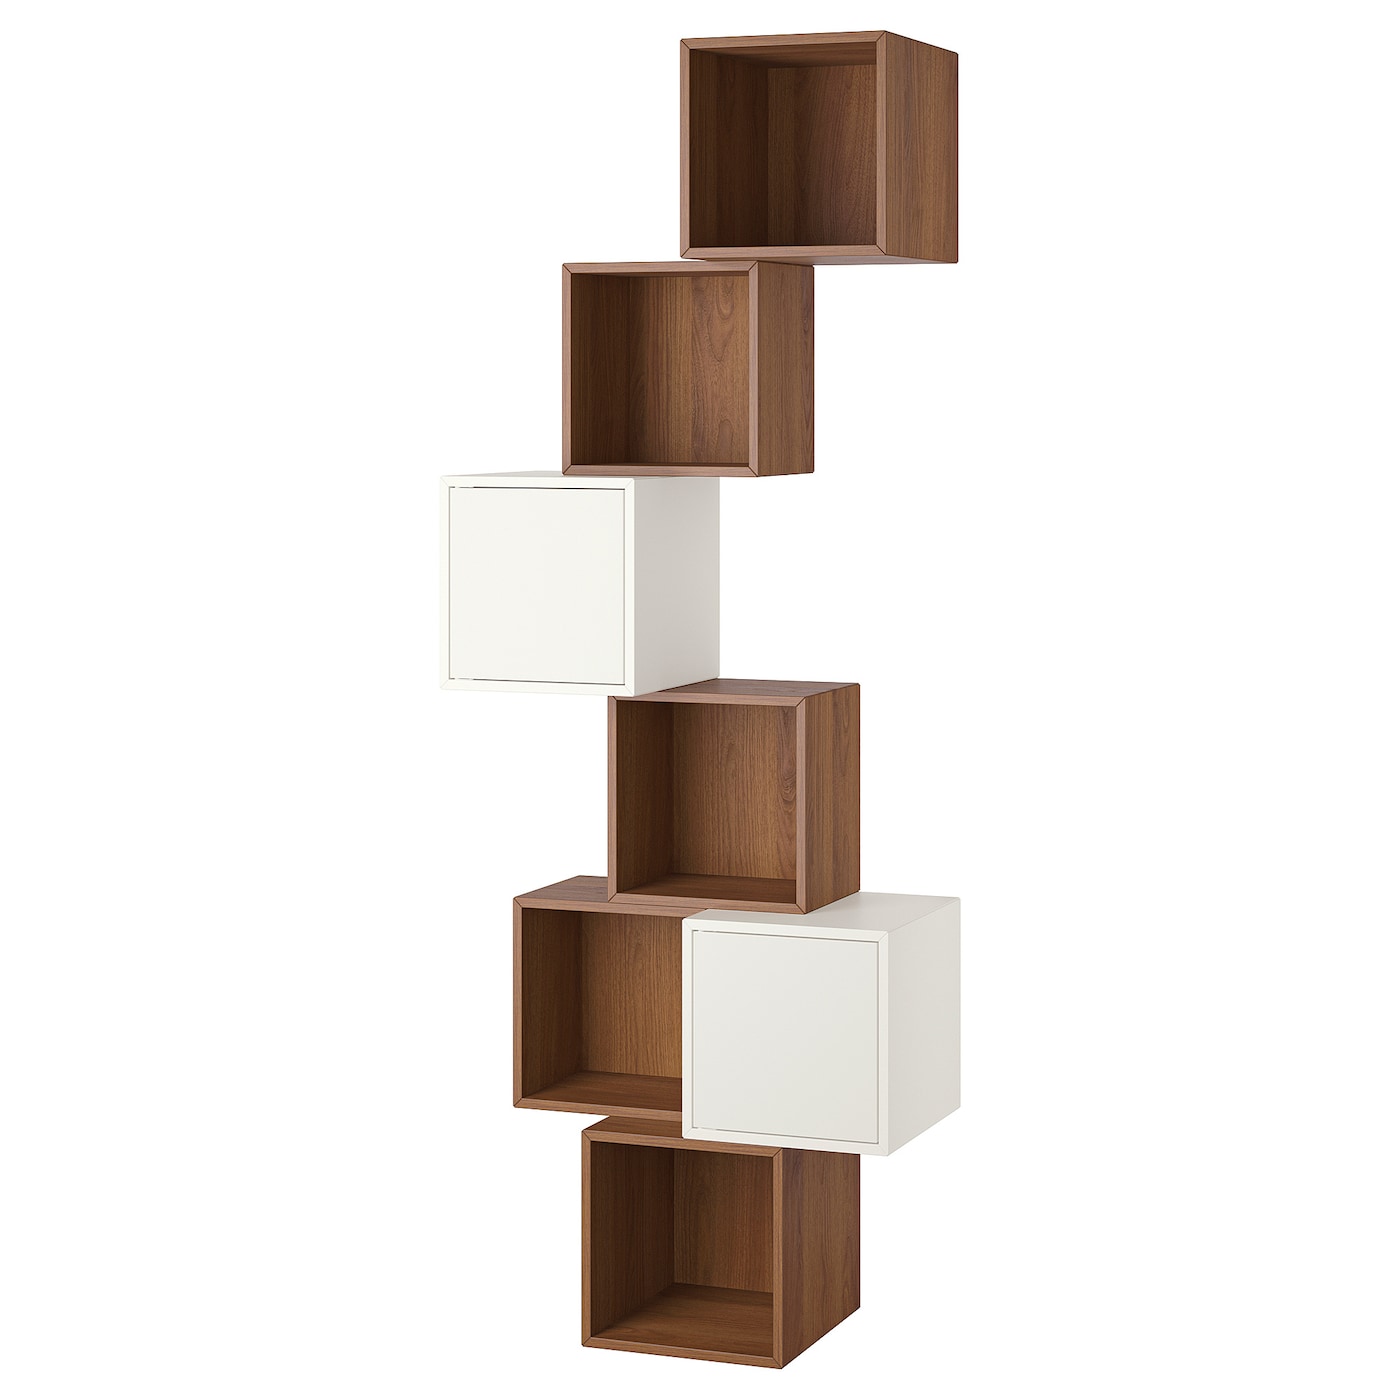 Комбинация навесных шкафов - IKEA EKET, 80x35x210 см, с эффектом ореха/белый, ЭКЕТ ИКЕА